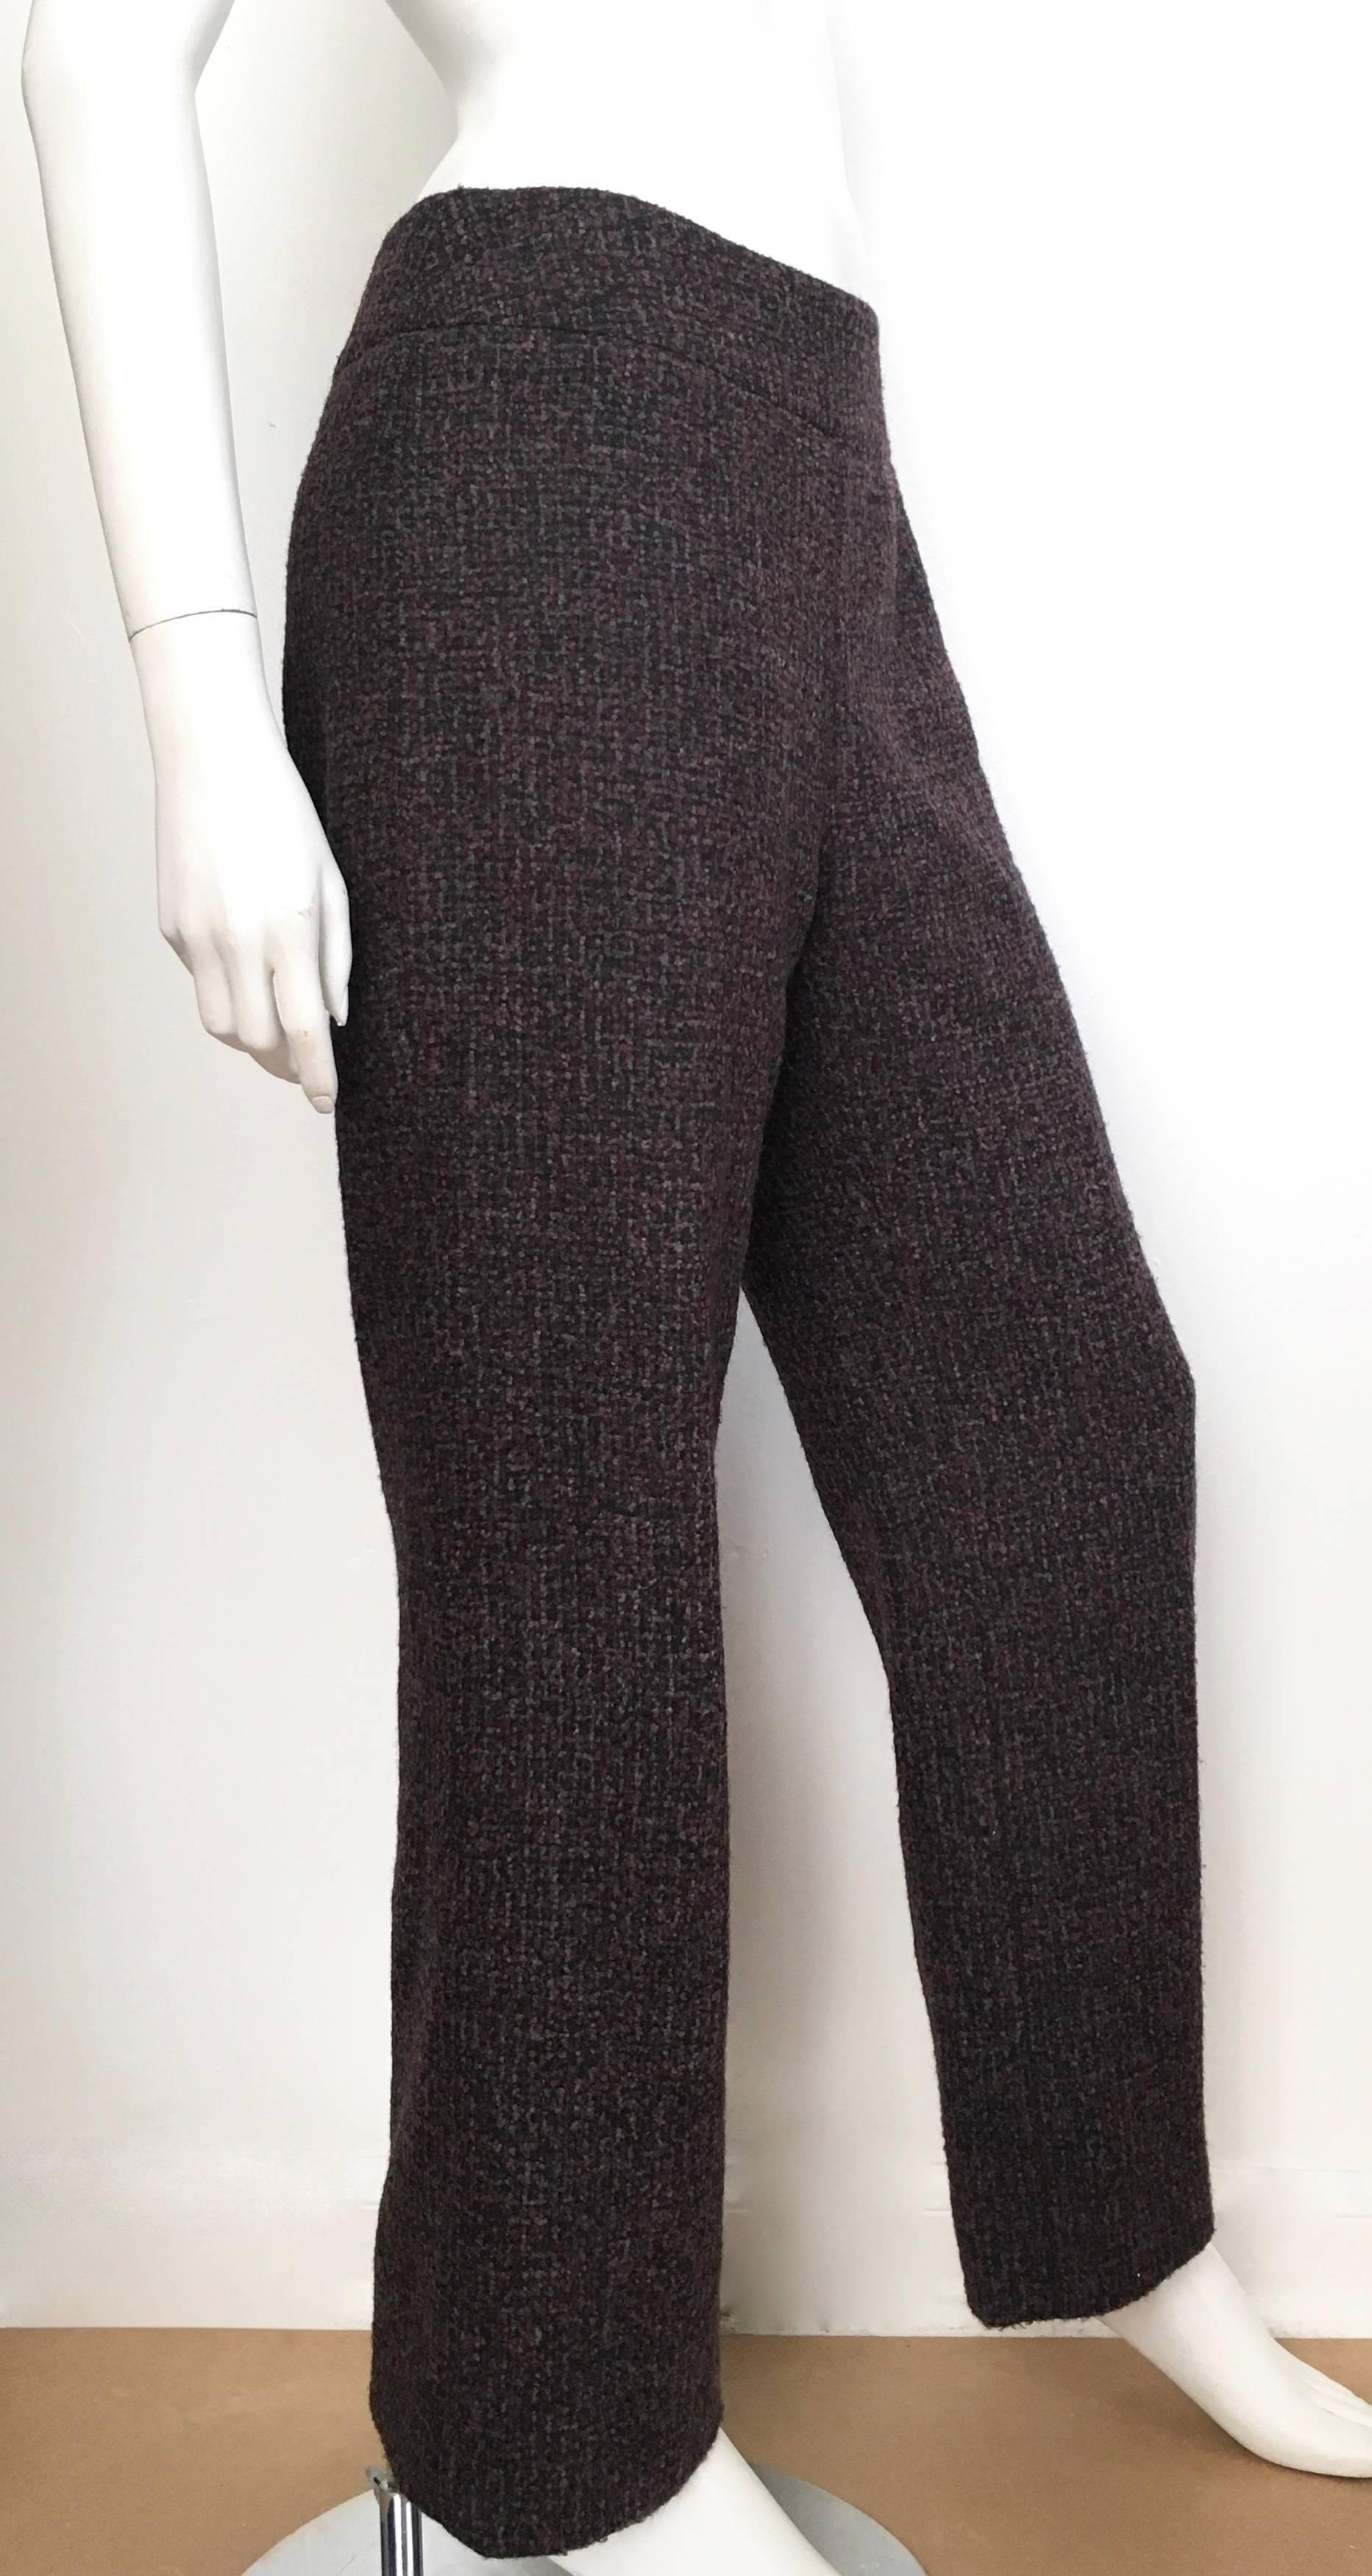 Black Oscar de la Renta Nubby Flannel Wool Pants Size 6. Made in Italy. For Sale